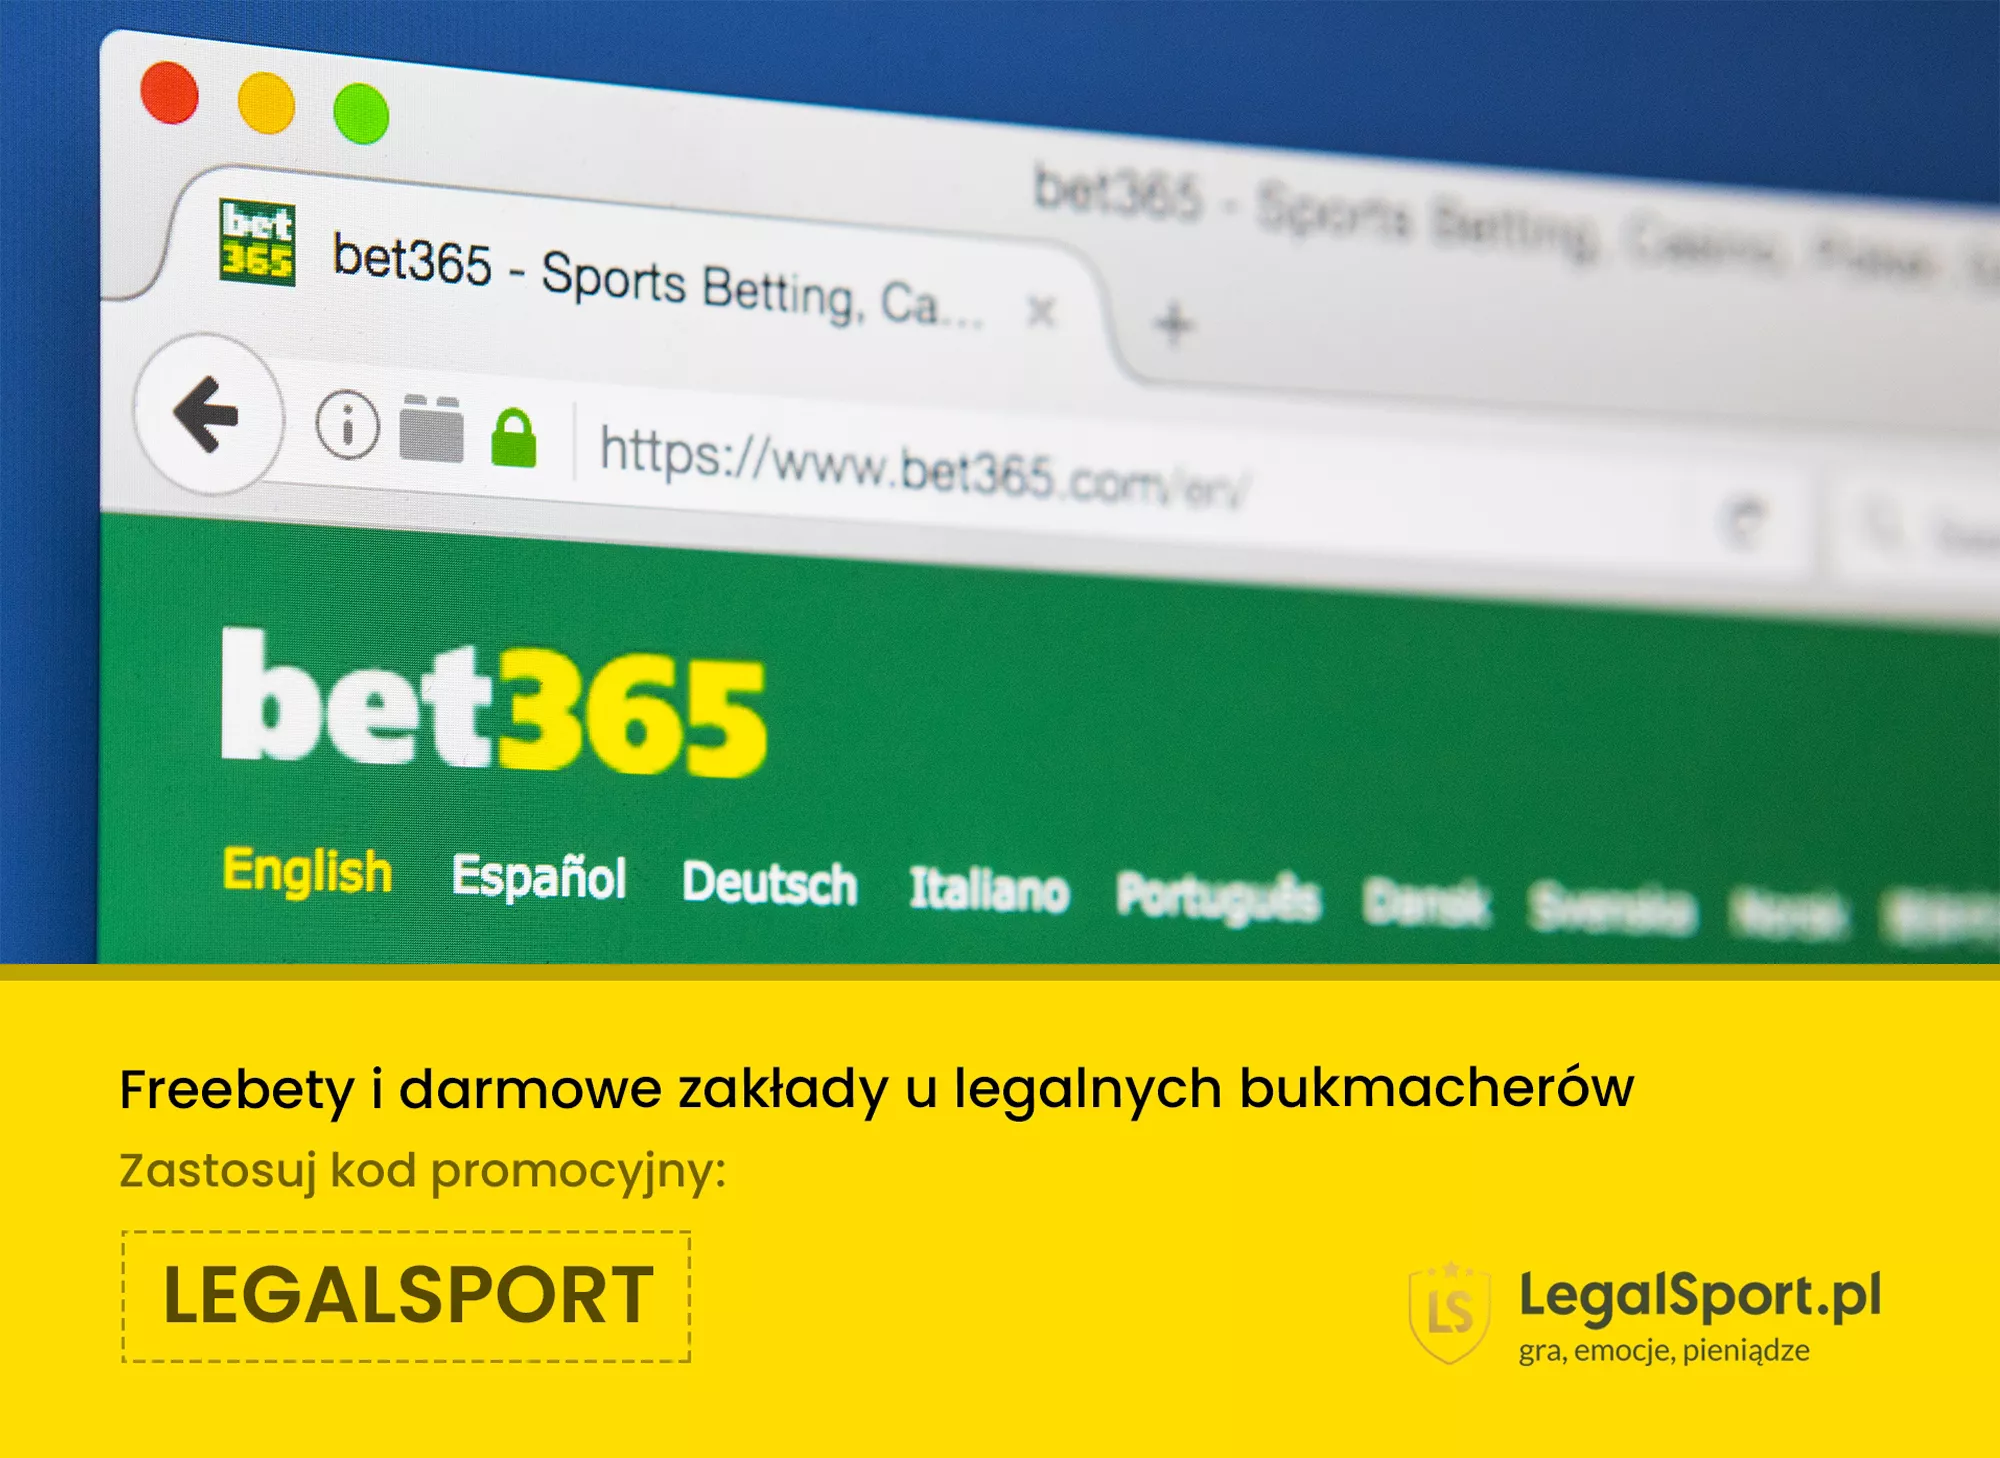 Czy bet365 jest legalny w Polsce?